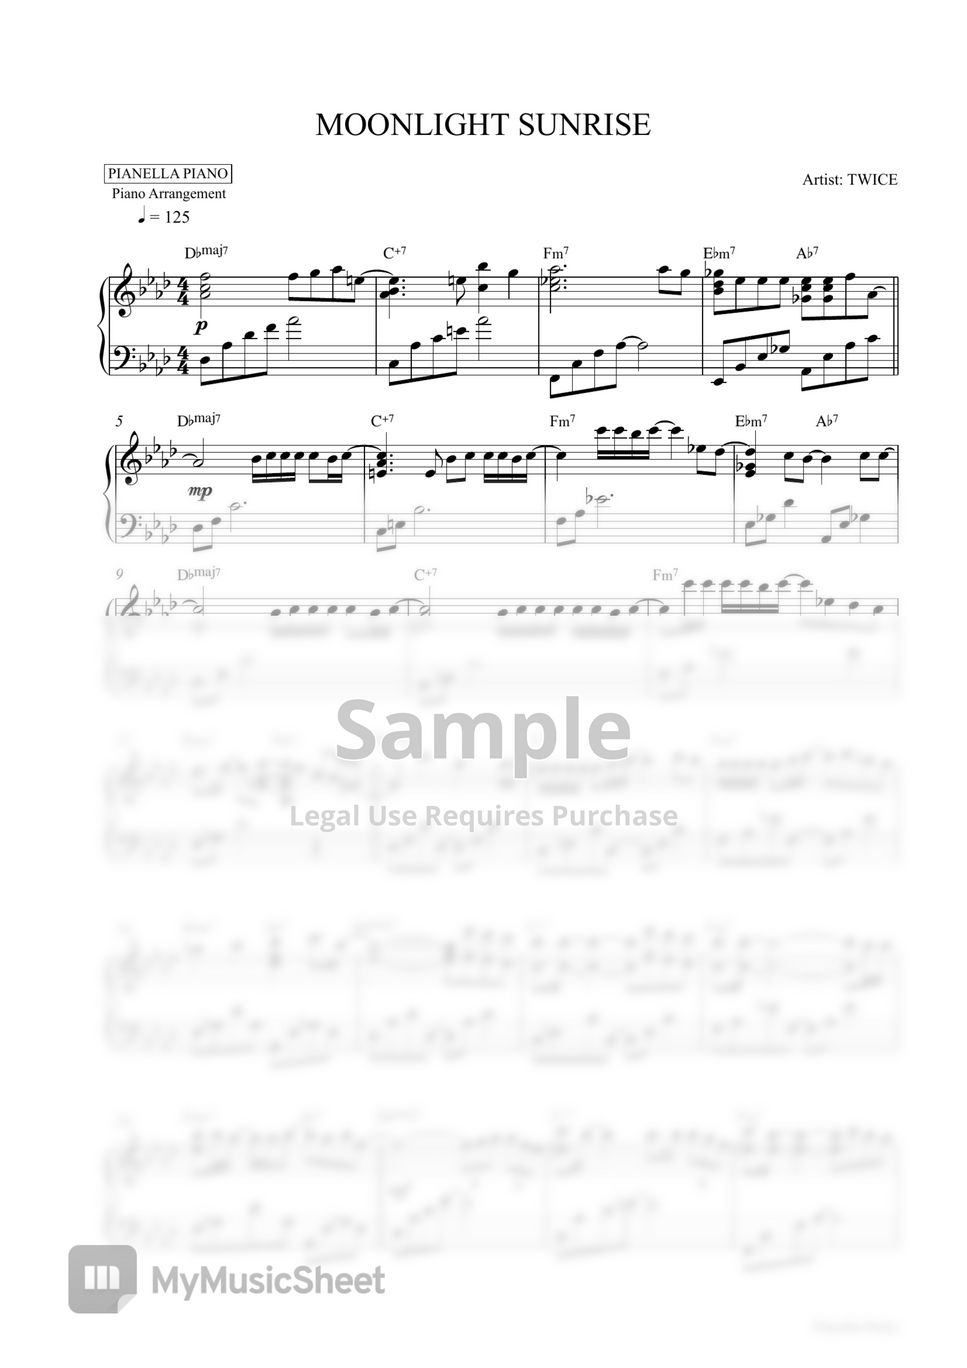 TWICE - MOONLIGHT SUNRISE (Piano Sheet) by Pianella Piano